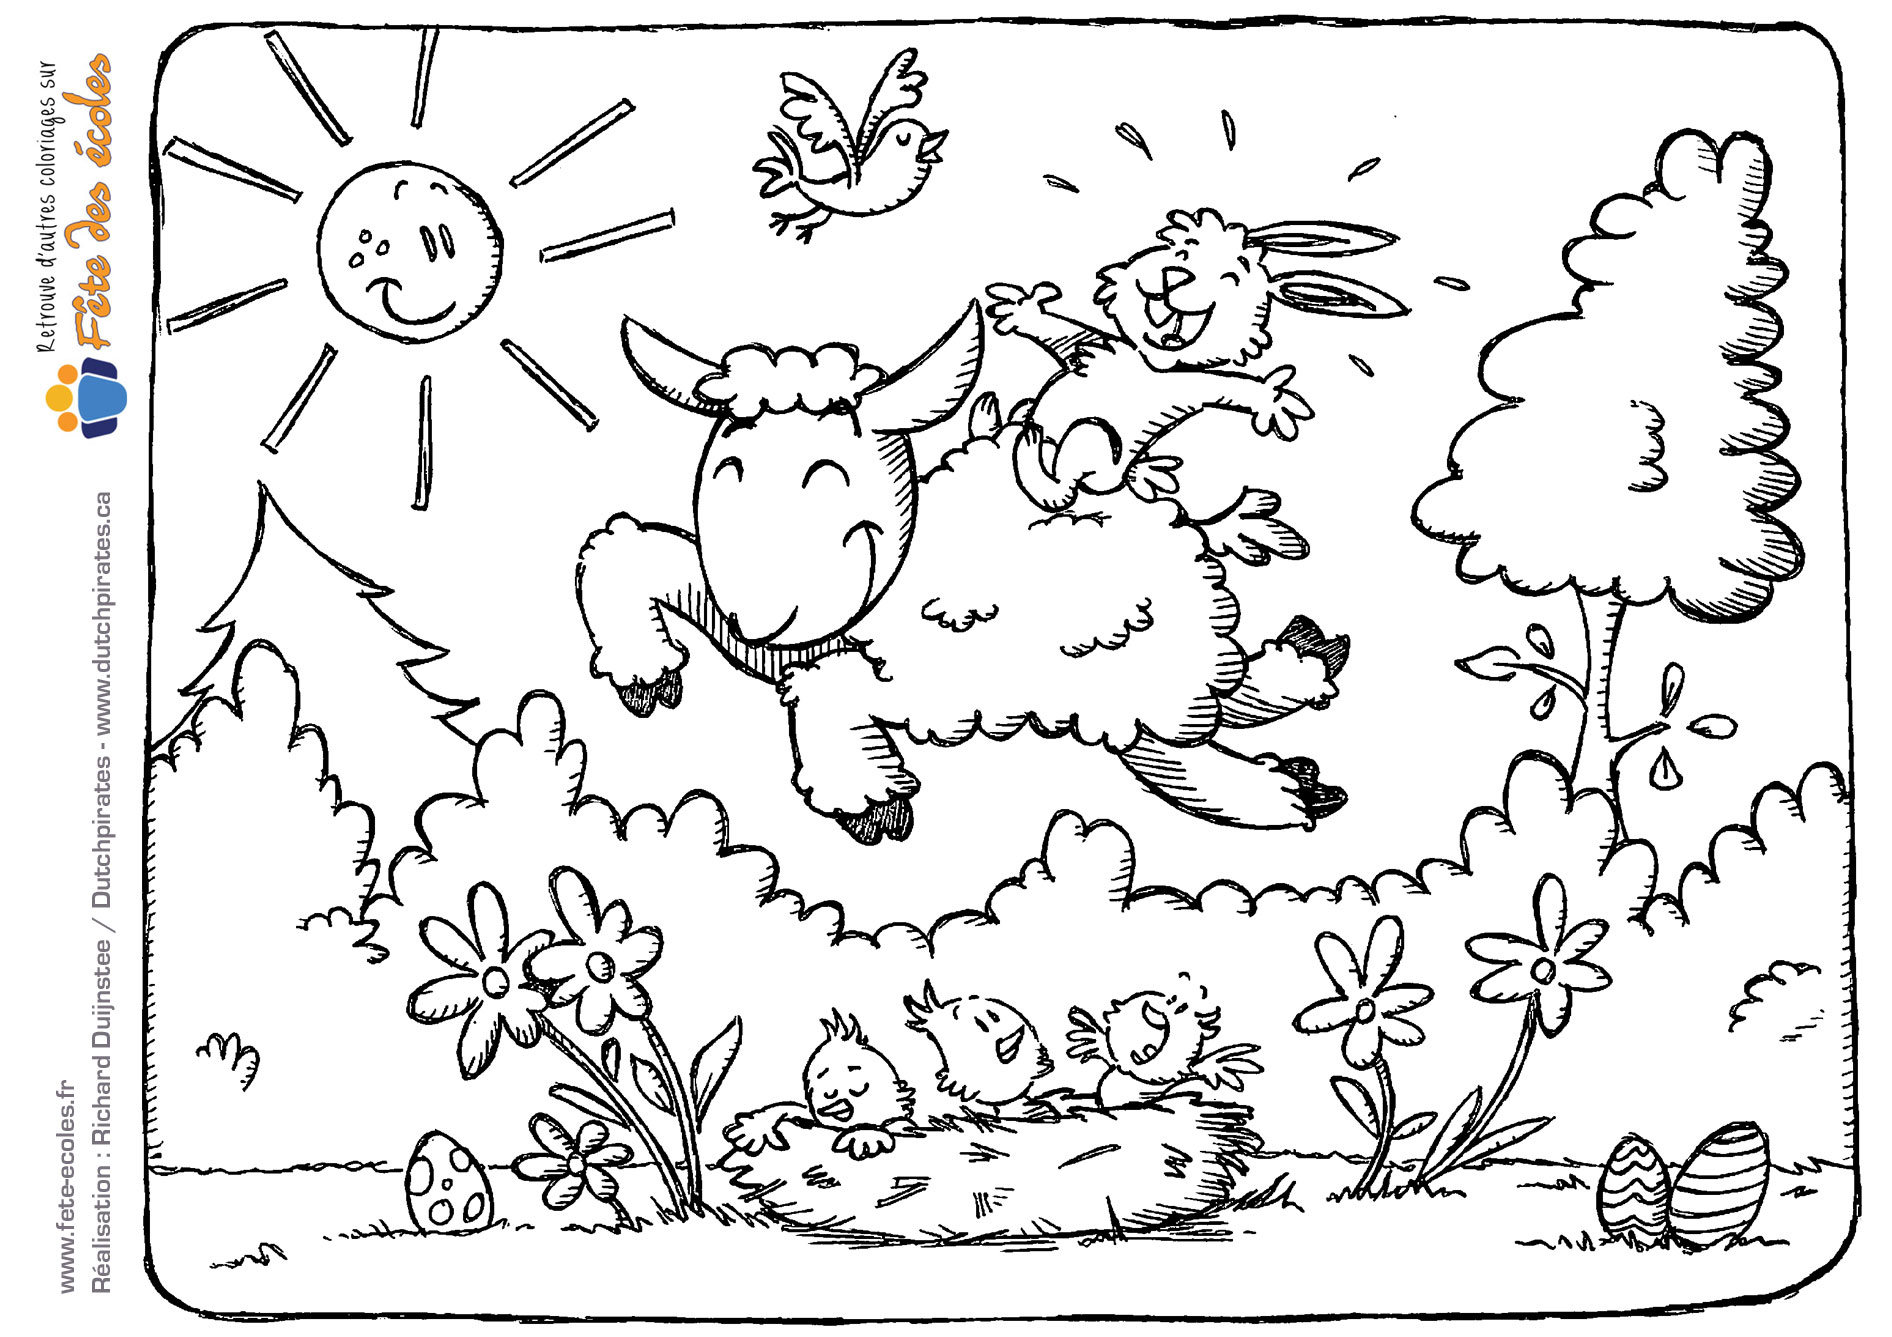 Un mouton, un lapin et des oiseaux célèbrent l'arrivée du printemps dans cette illustration de de Dutchpirates - Richard Duijnstee